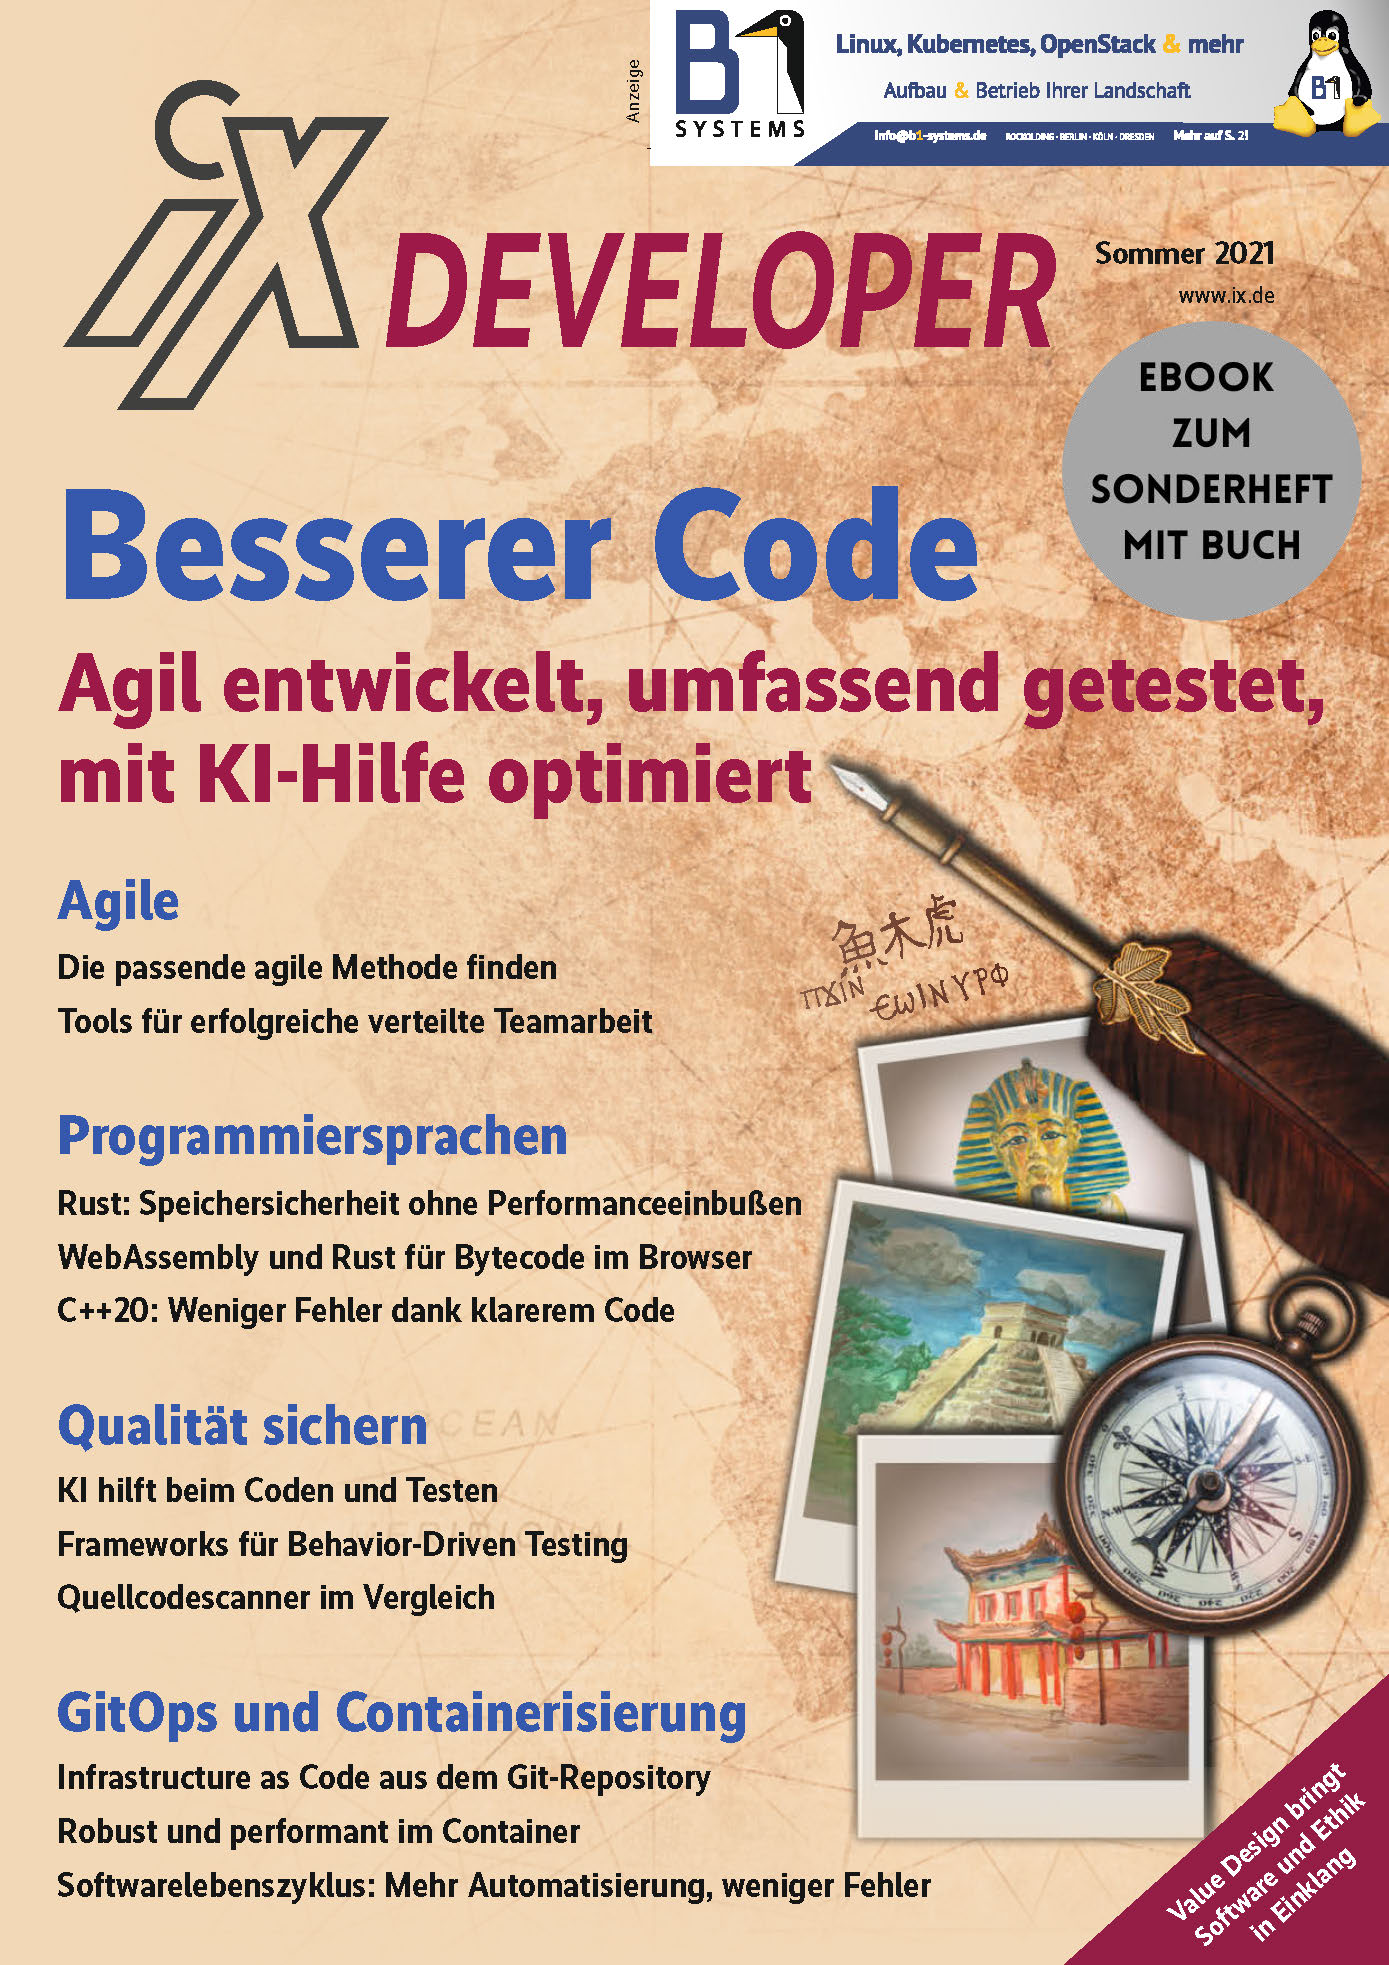 iX Developer Besserer Code (eBook zum Sonderheft mit Buch)